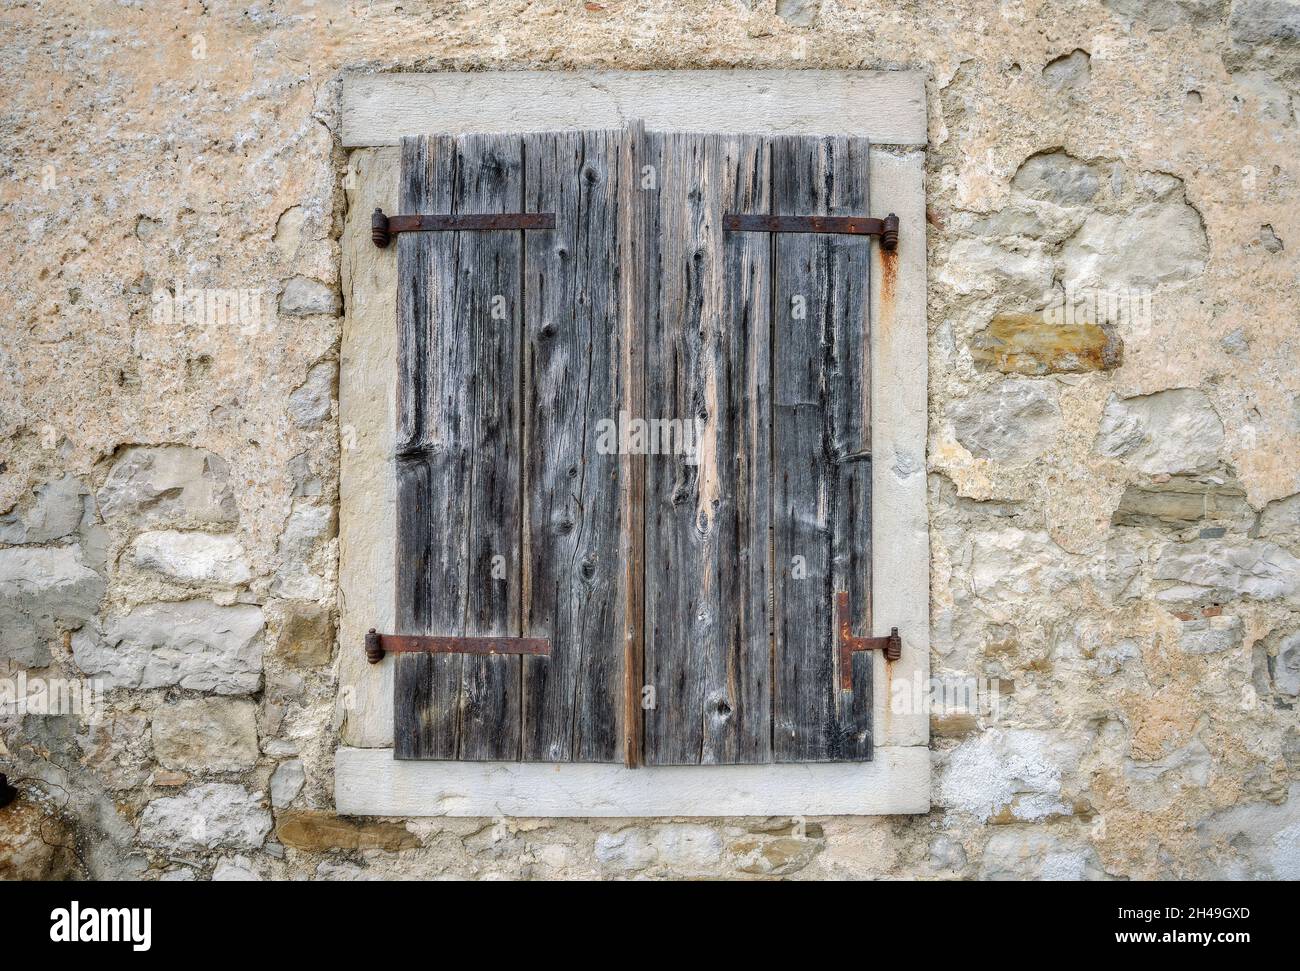 Gros plan d'une fenêtre avec des volets en bois sur le mur en pierre de la vieille maison.Hum, Croatie Banque D'Images